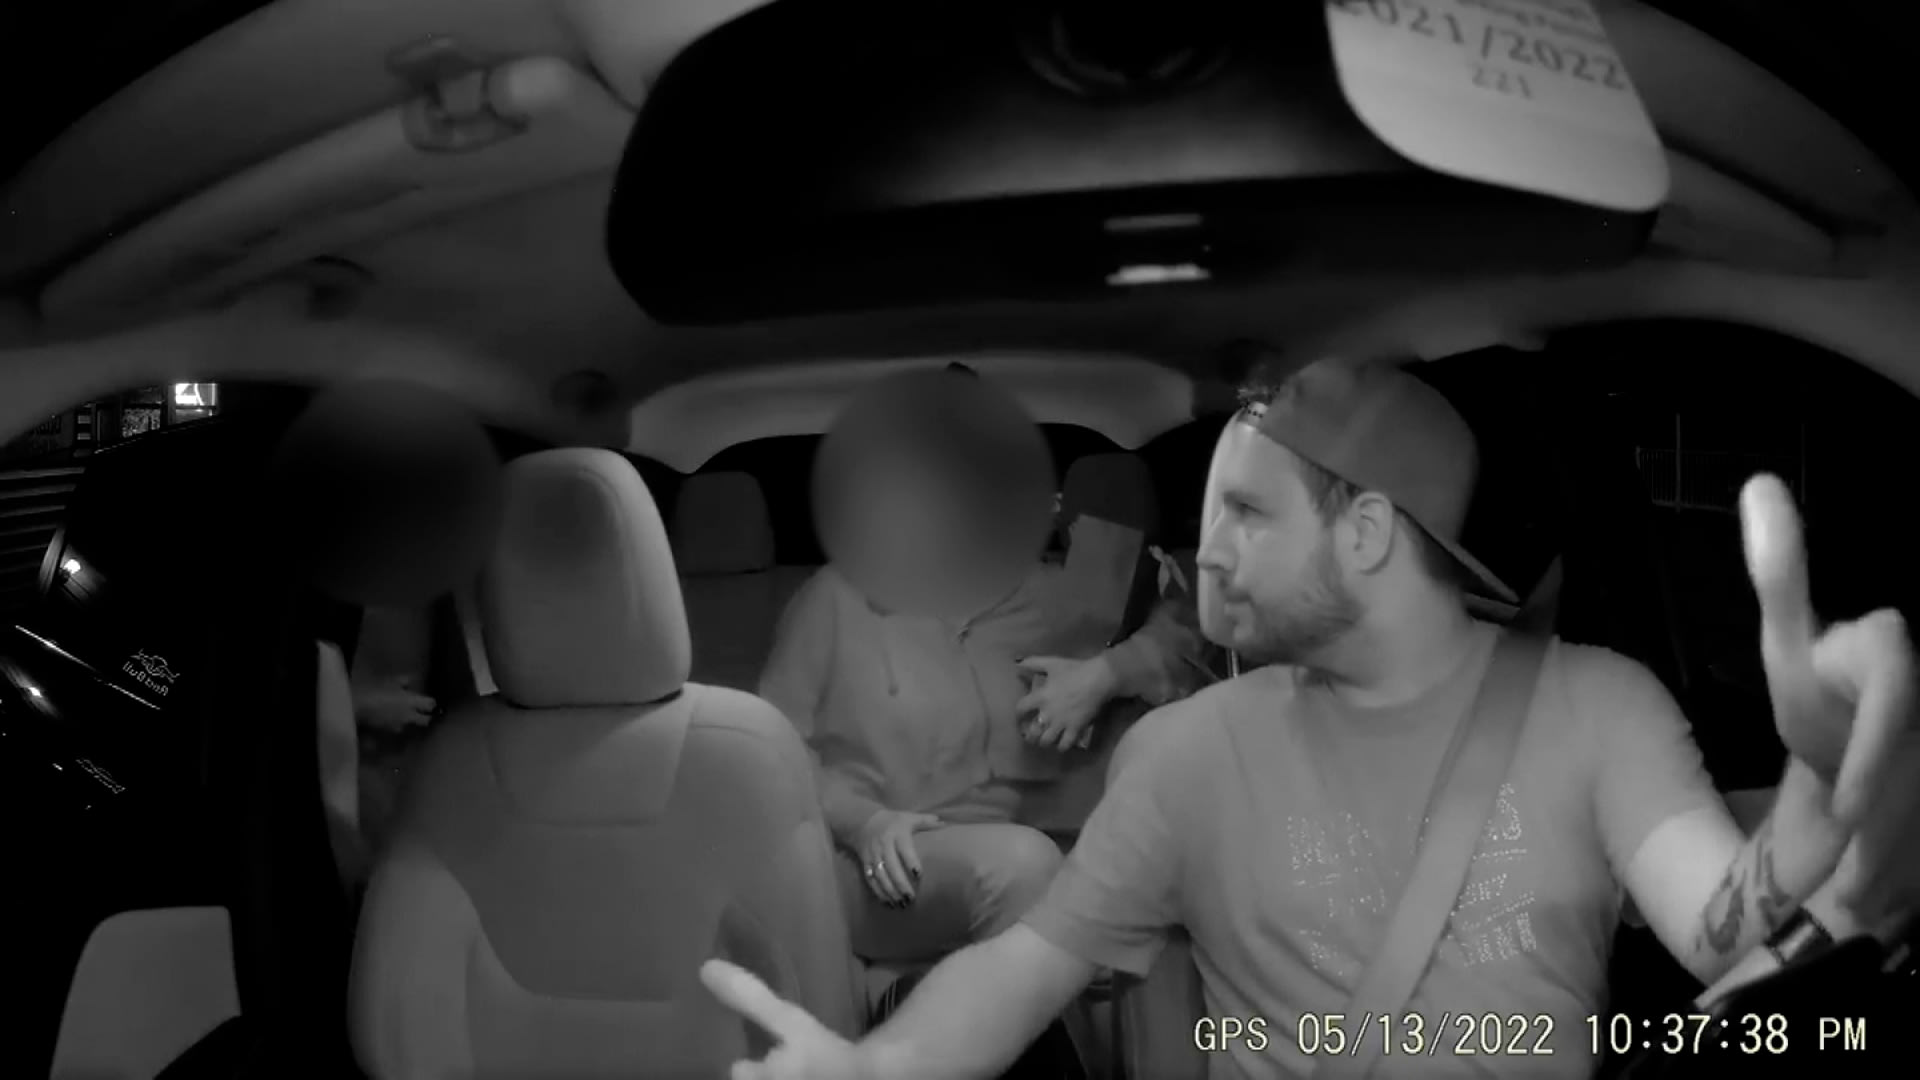 سائق سيارة أجرة يطرد ركابًا بعد إطلاقهم تعليقات عنصرية.. شاهد كيف واجههم